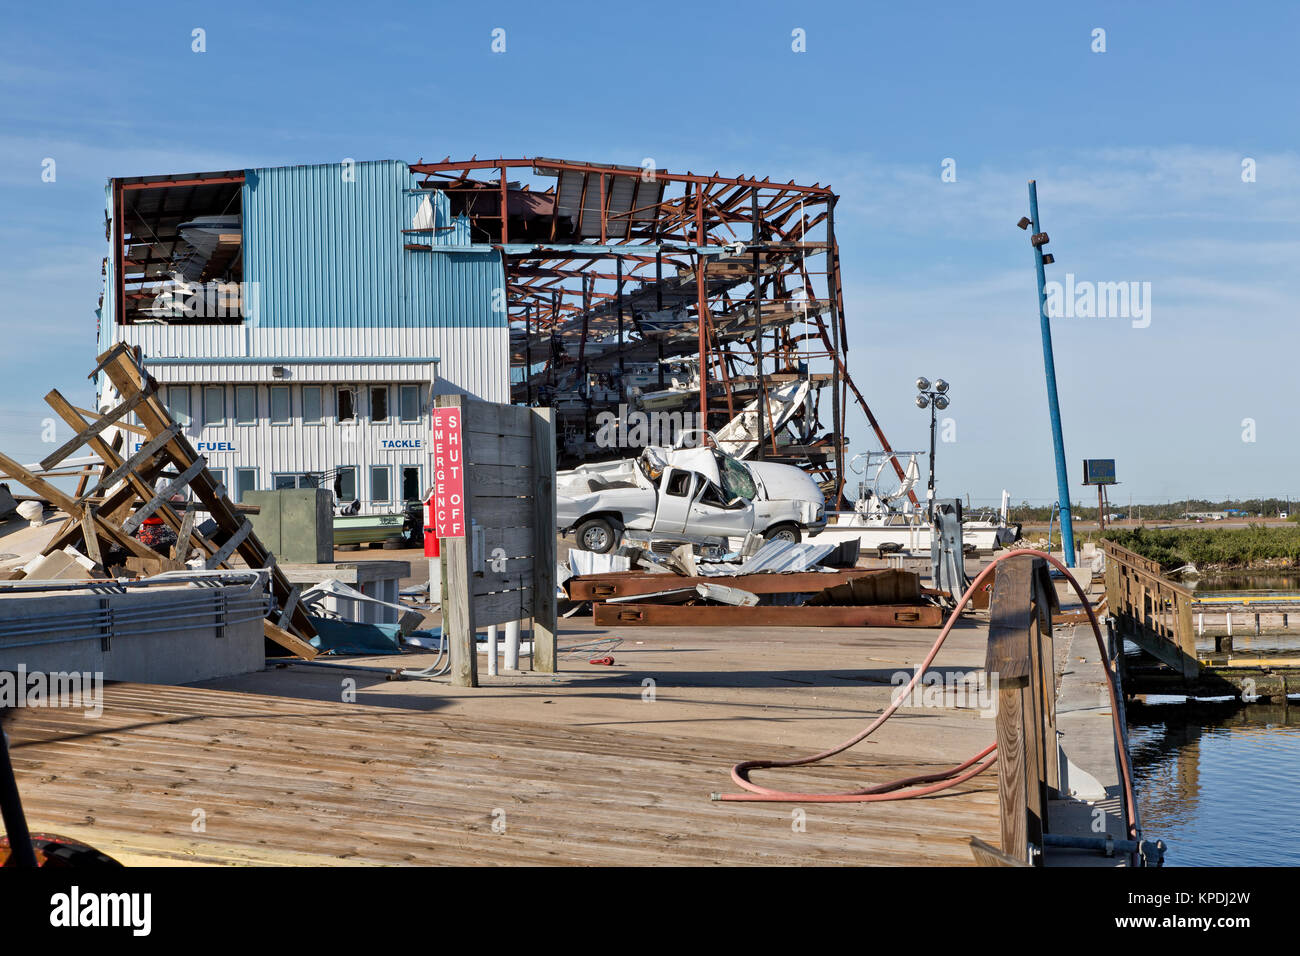 Destruction de Cove Harbour Marina & Dry Stack, site de stockage, Rockport, Texas, par l'ouragan Harvey en 2017. Banque D'Images